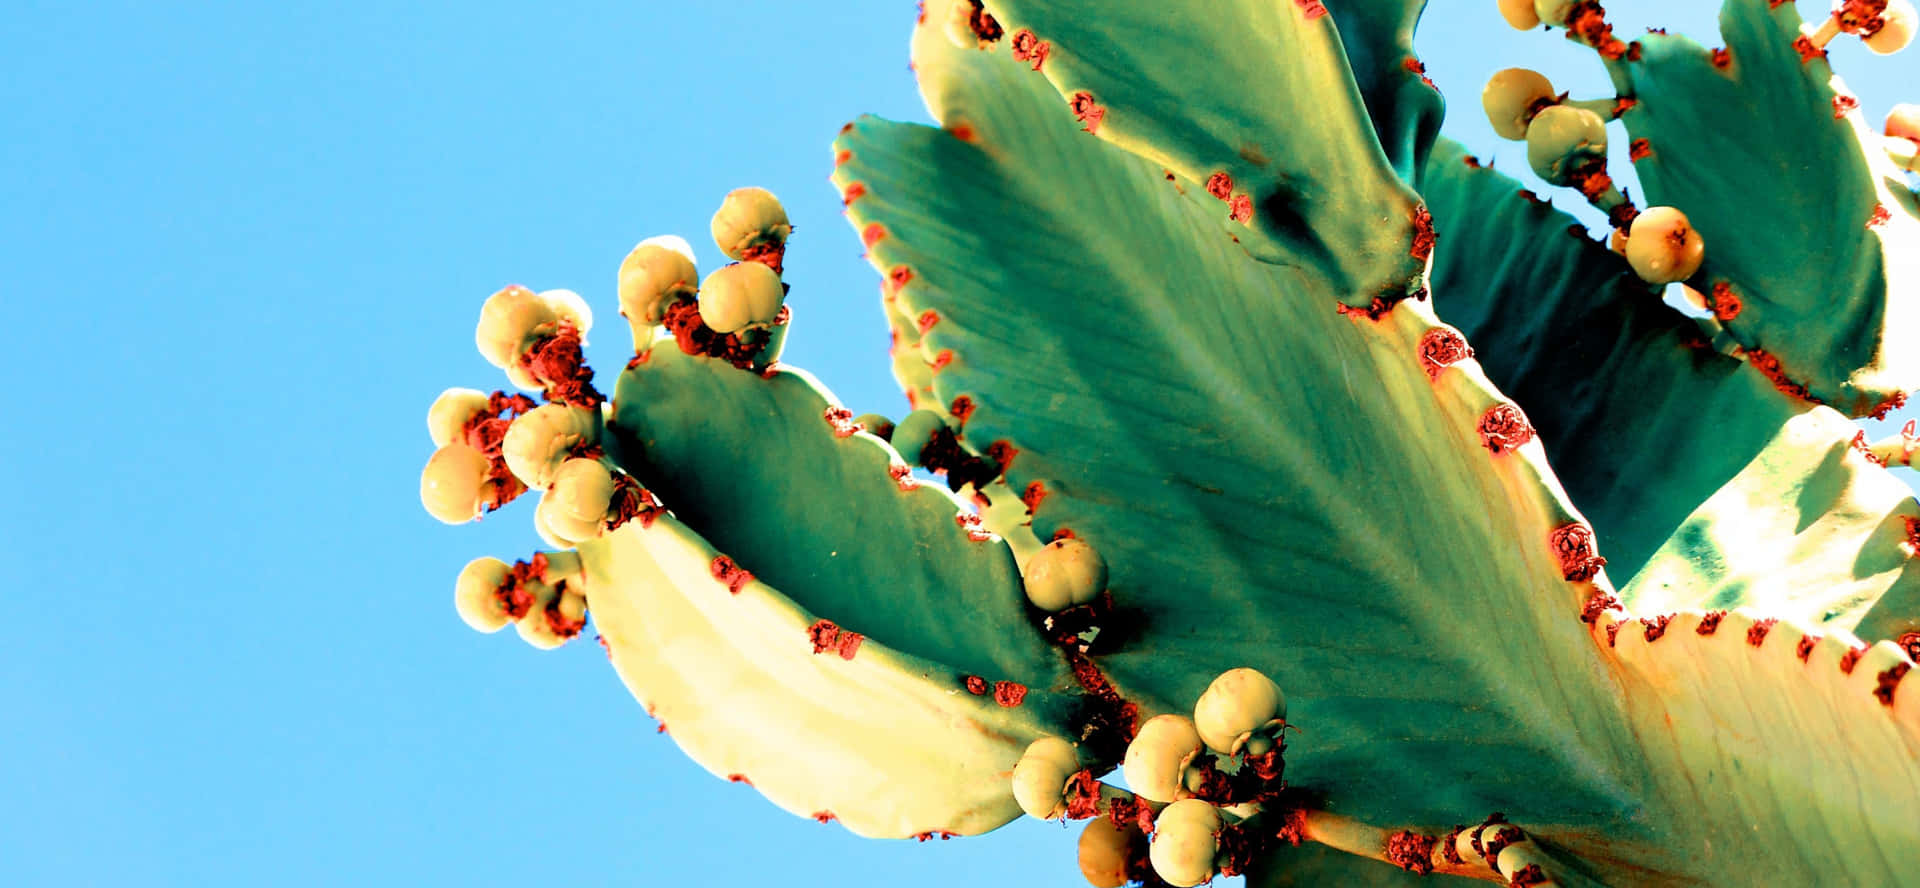 Bleeding Cactus Summer Picture